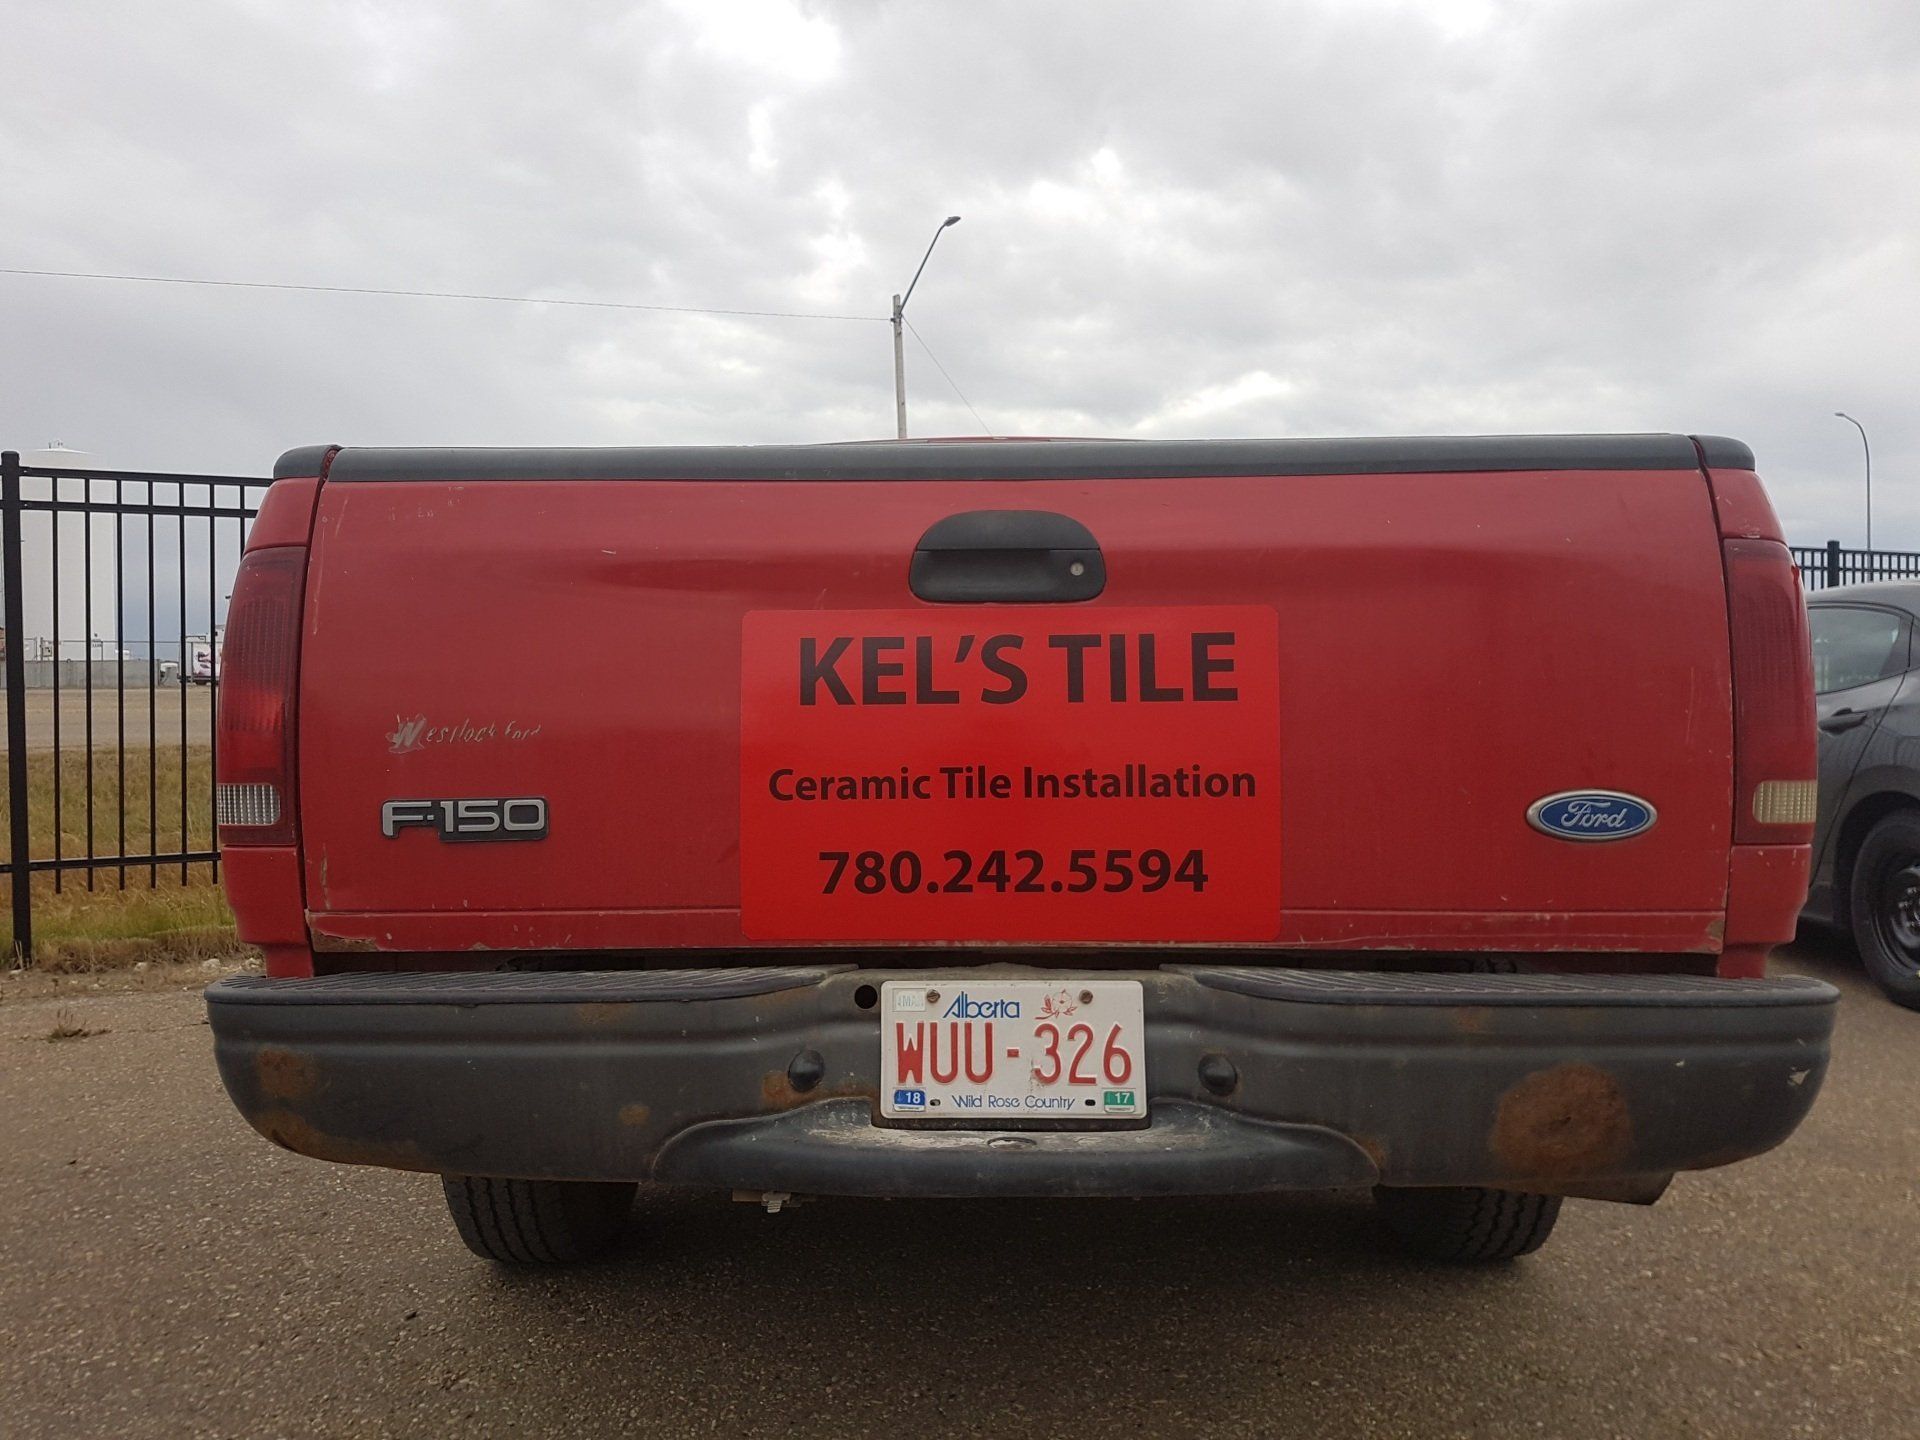 Kel's Tile Vehicle Magnets